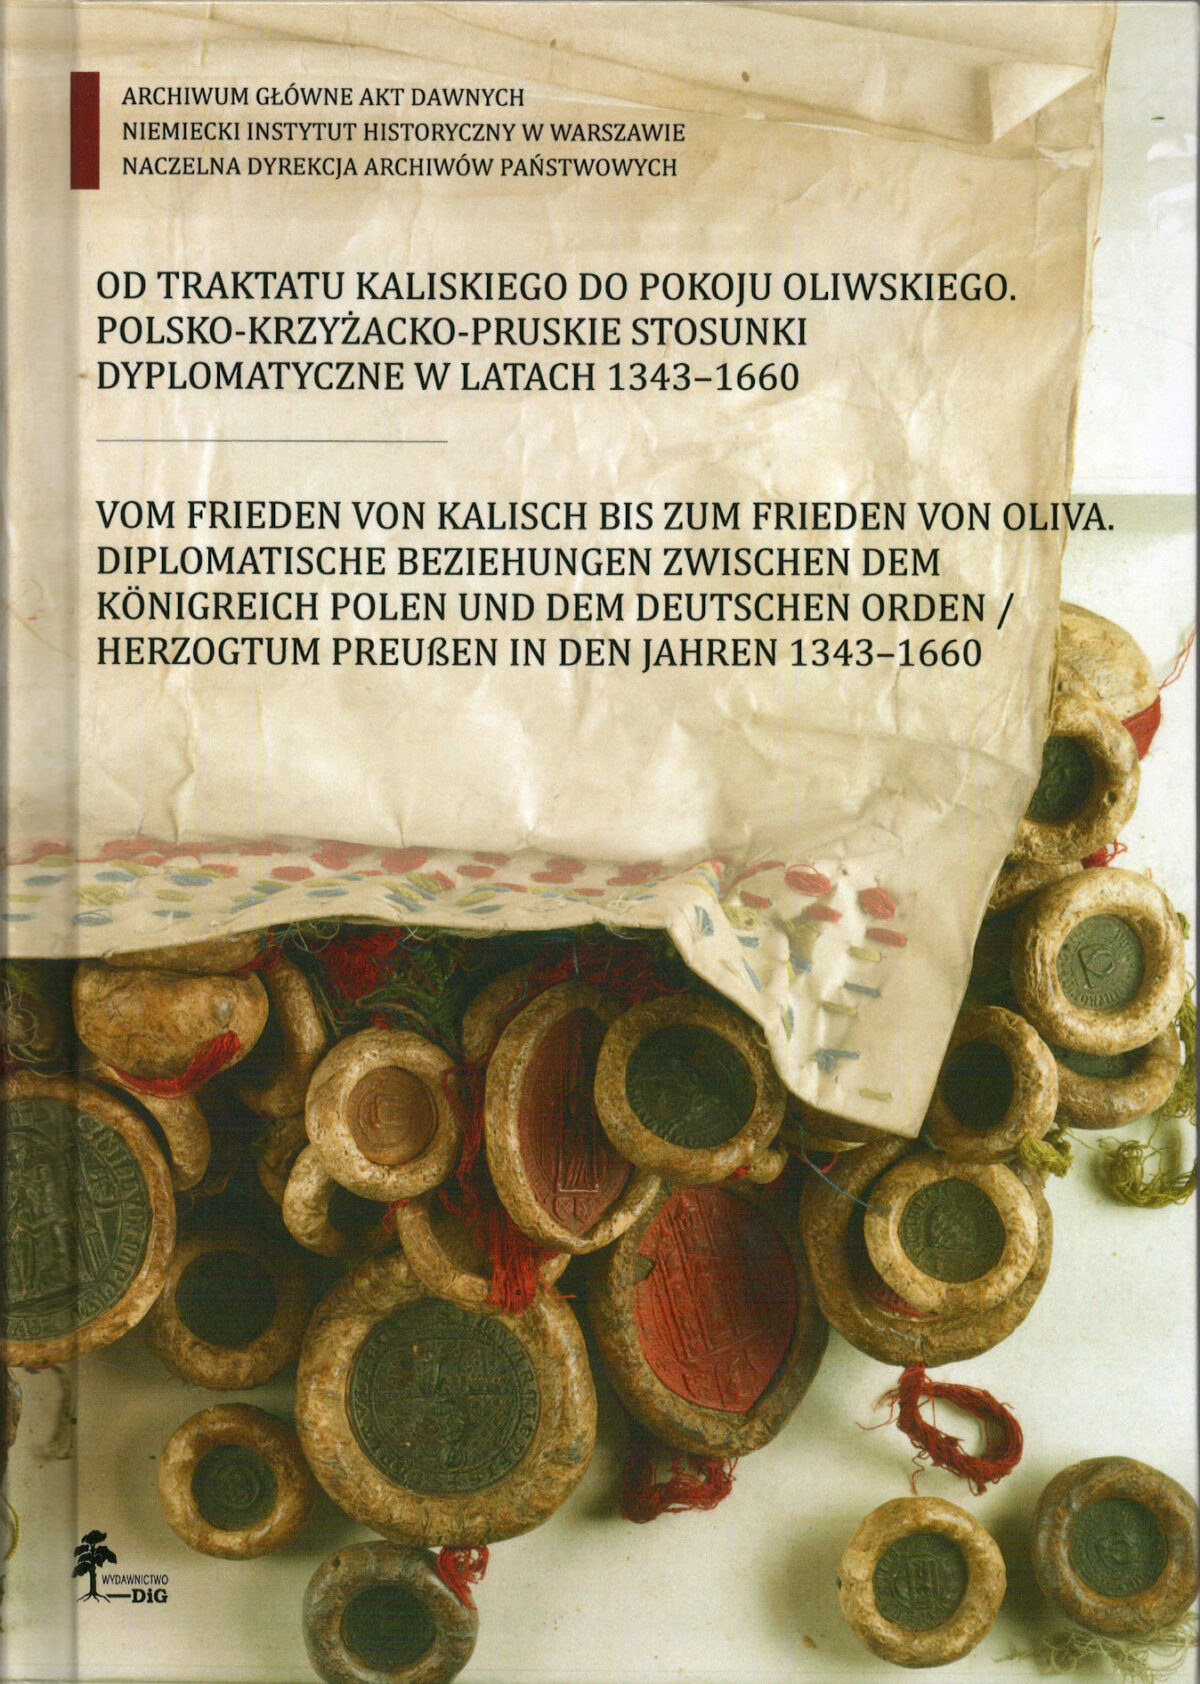 POLSKA: Wspólna publikacja Archiwum Głównego Akt Dawnych i Niemieckiego Instytutu Historycznego w Warszawie